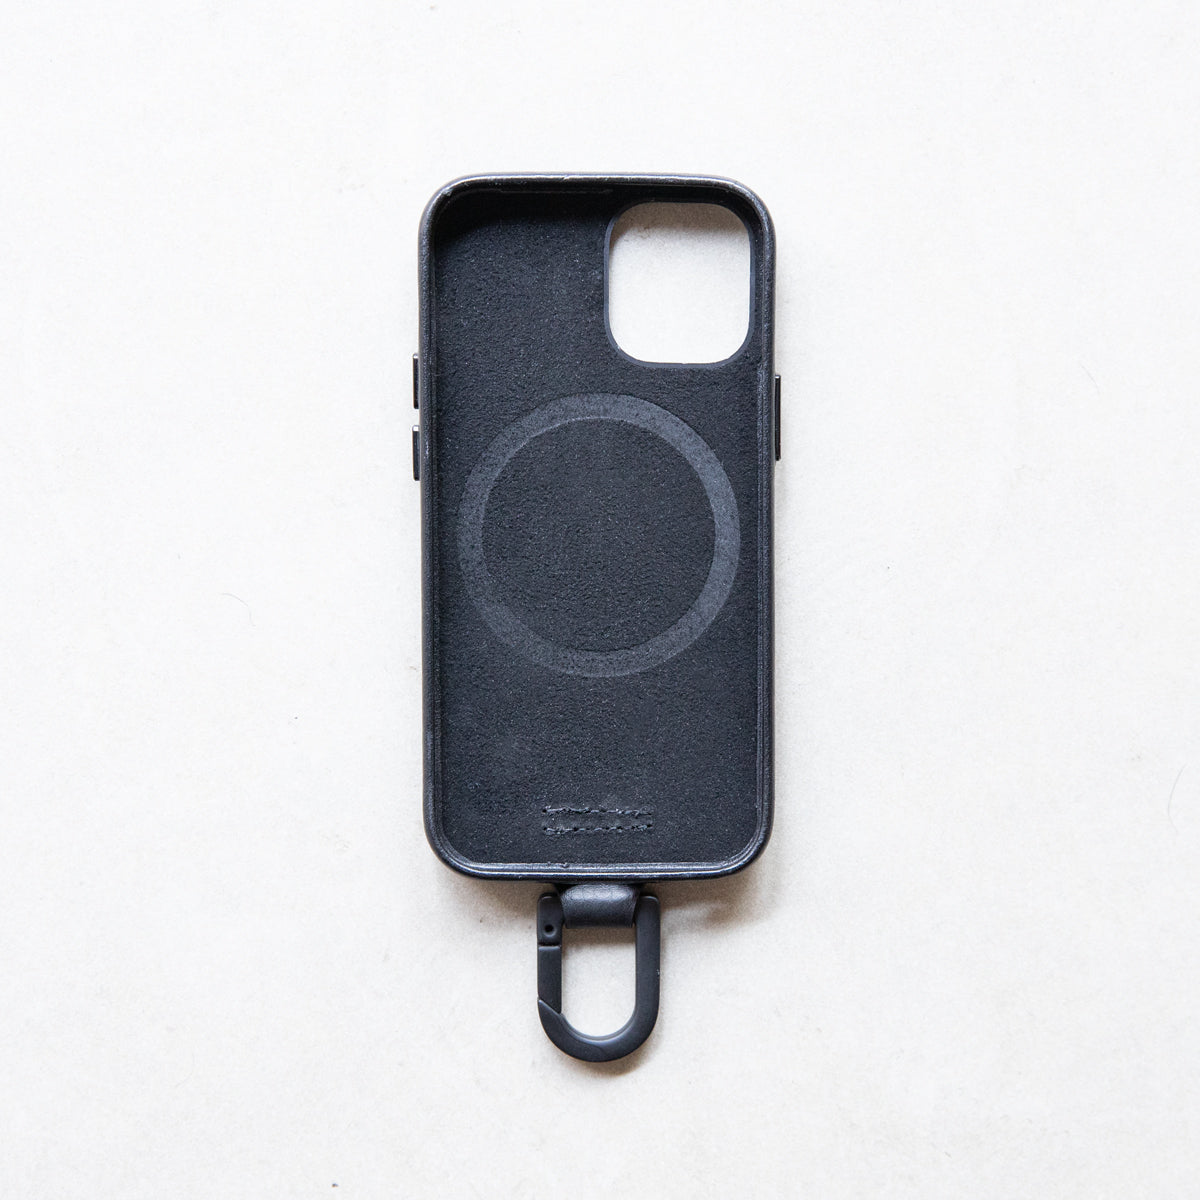 レザーストラップ + iPhoneケースセット - ブラック